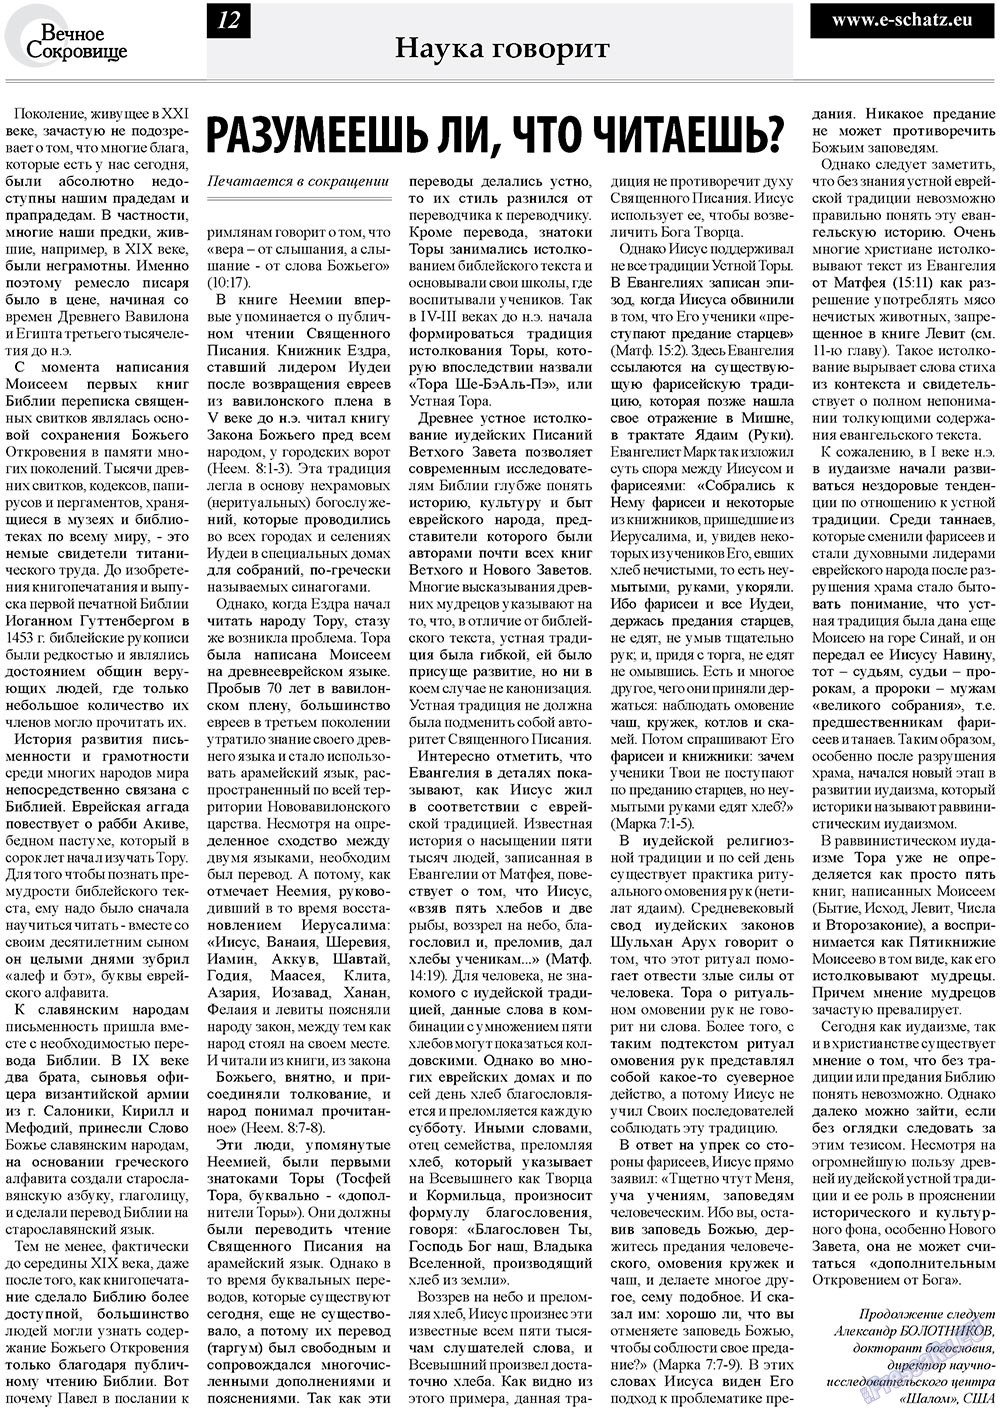 Вечное сокровище (газета). 2010 год, номер 3, стр. 12